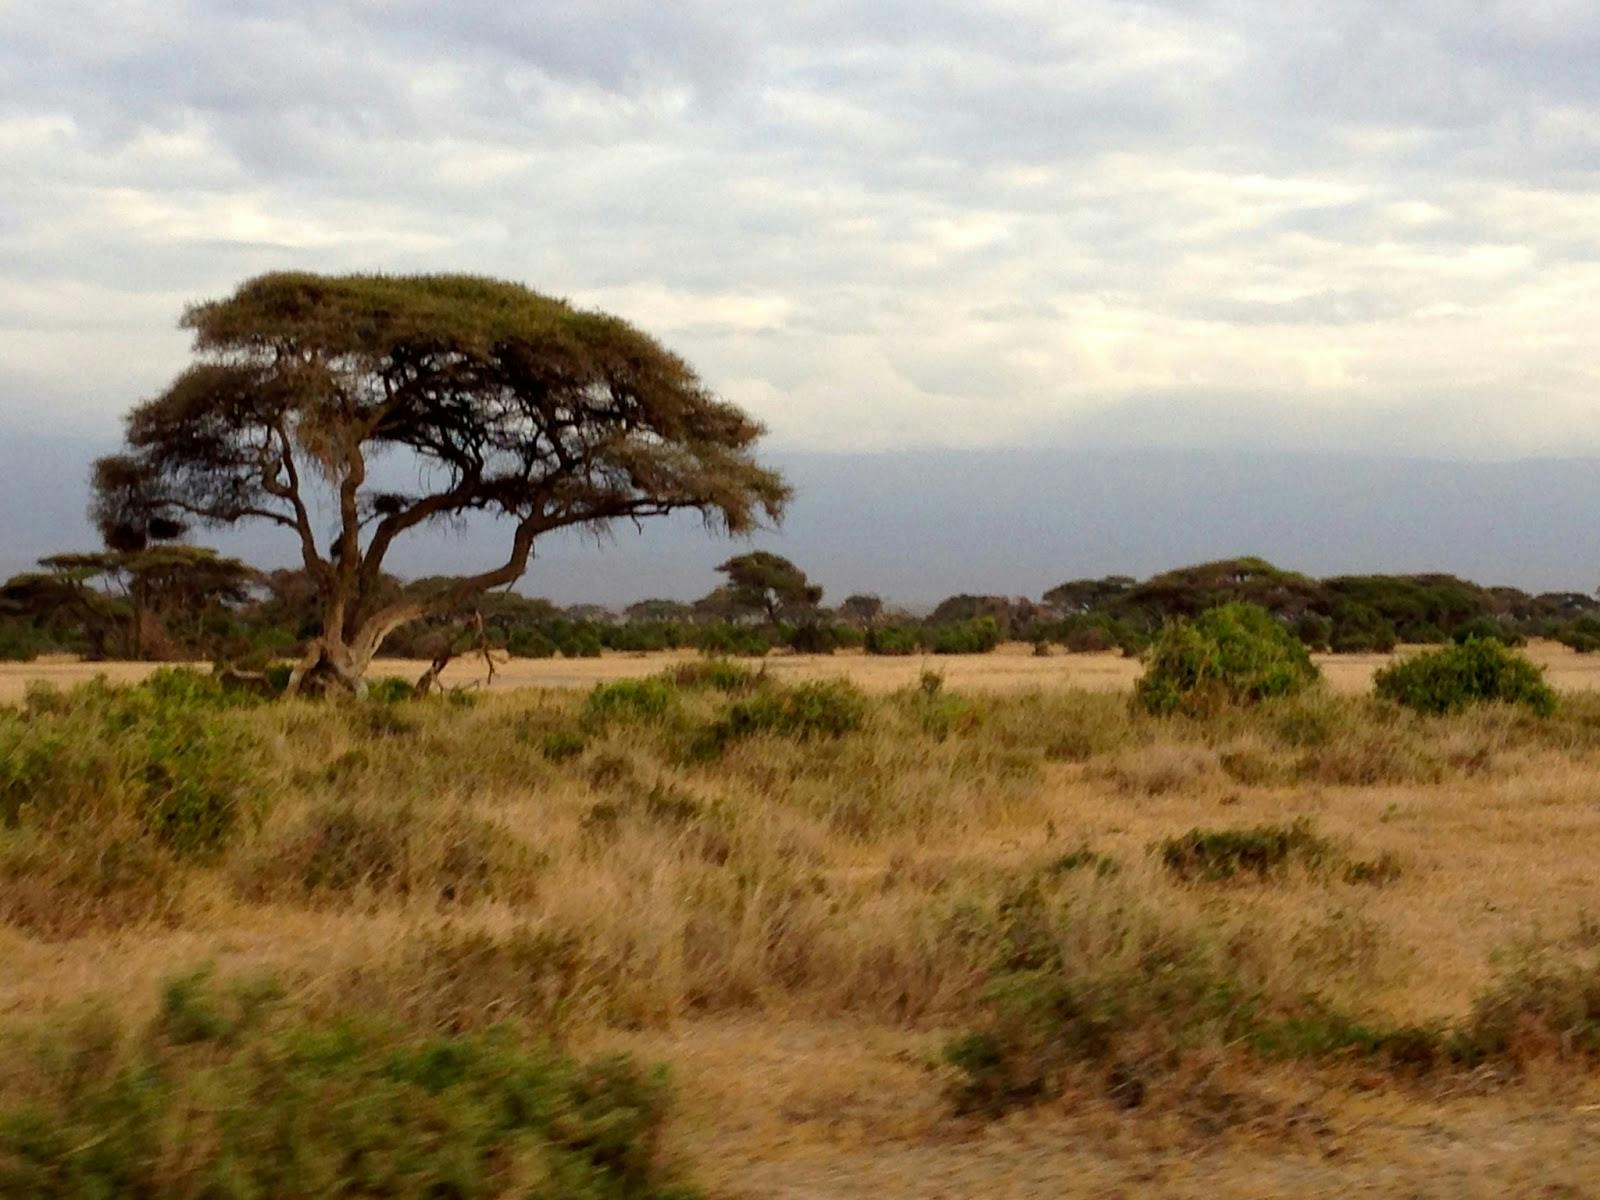 Image - Amboseli National Park